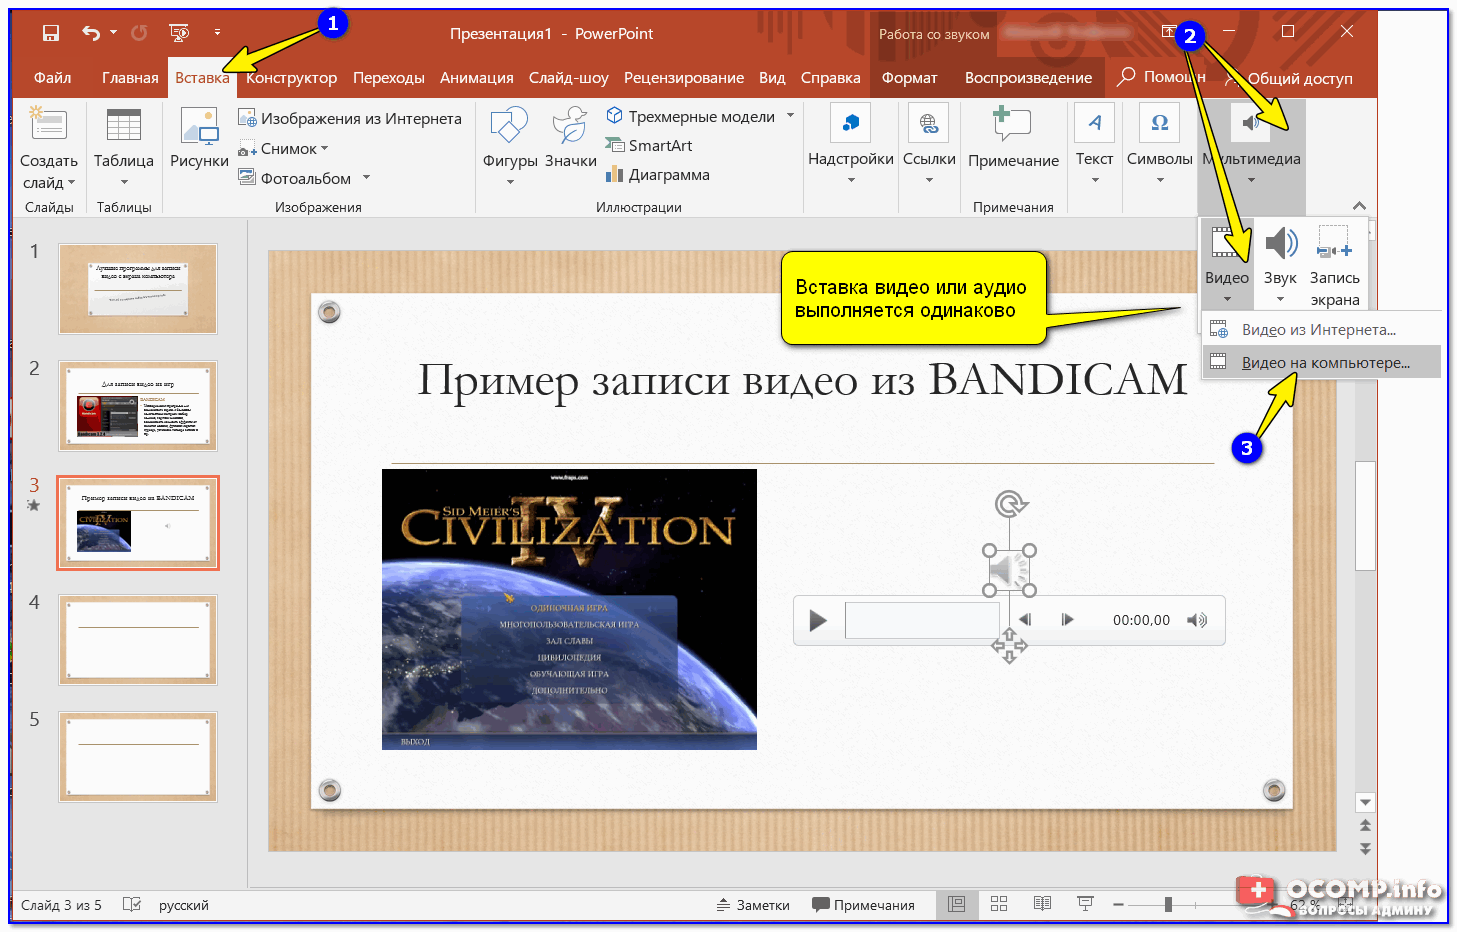 Презентации Microsoft PowerPoint великолепны, но они не так легко доступны, как видео К счастью, вы можете конвертировать свои презентации в видео с помощью